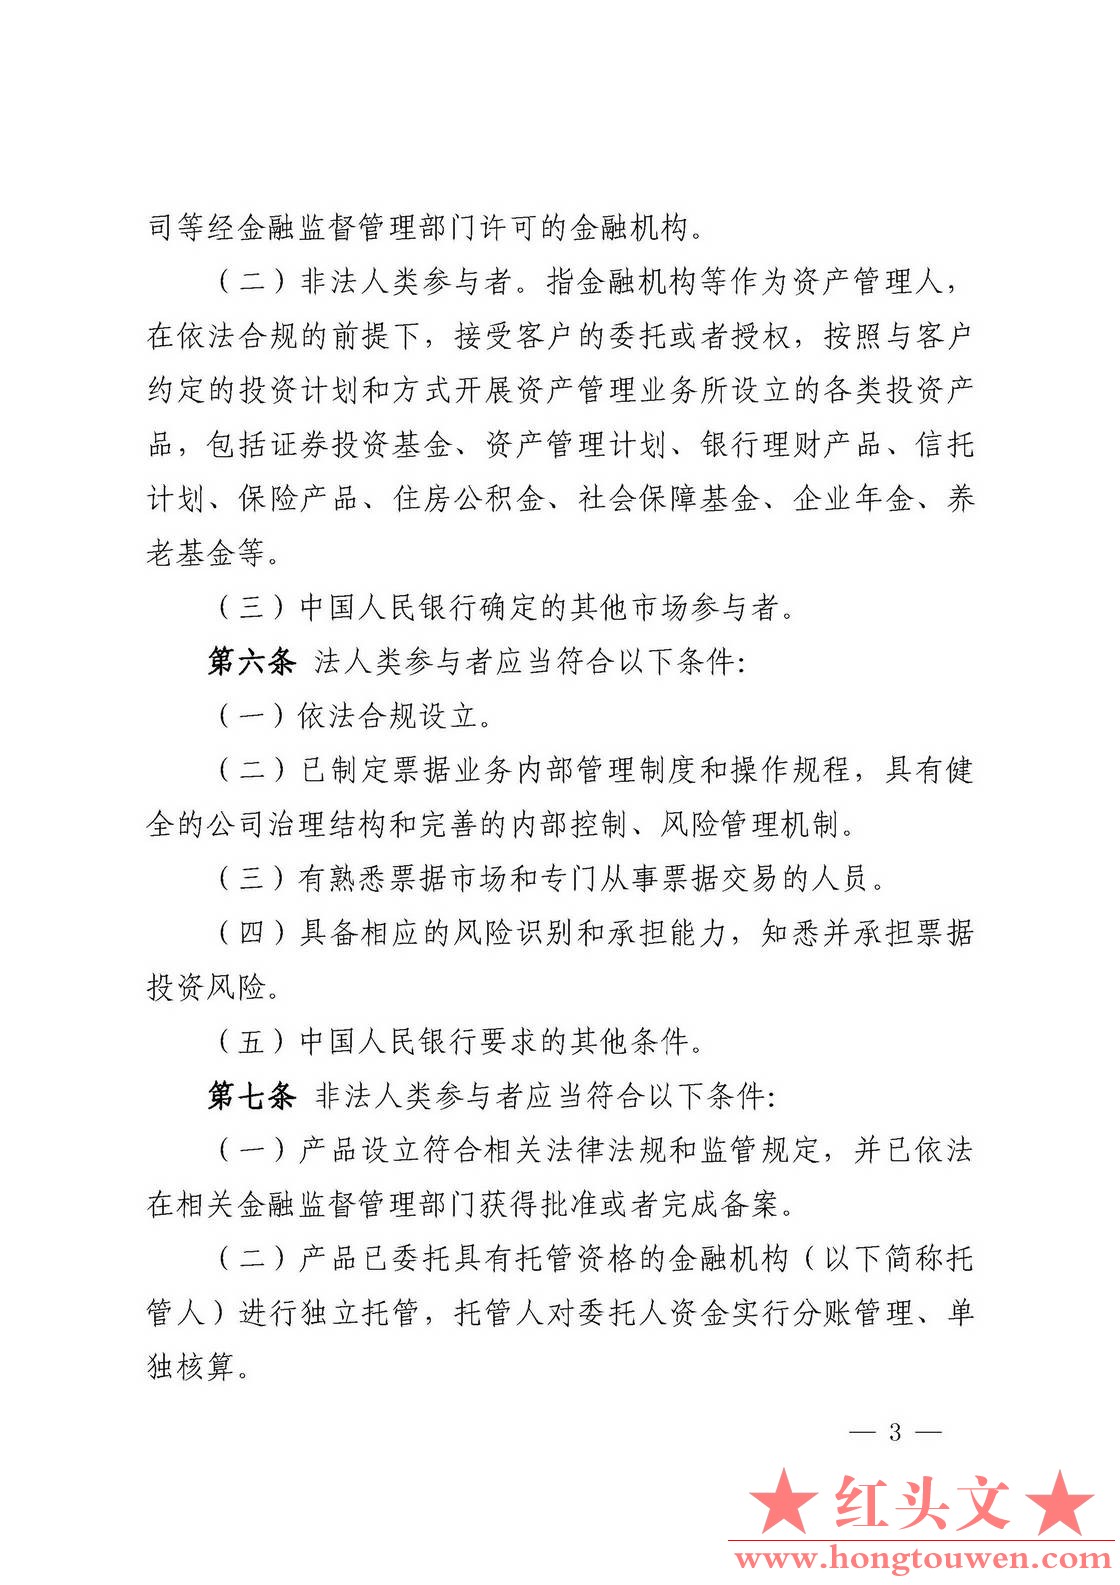 中国人民银行公告[2016]9号-票据交易管理办法_页面_03.jpg